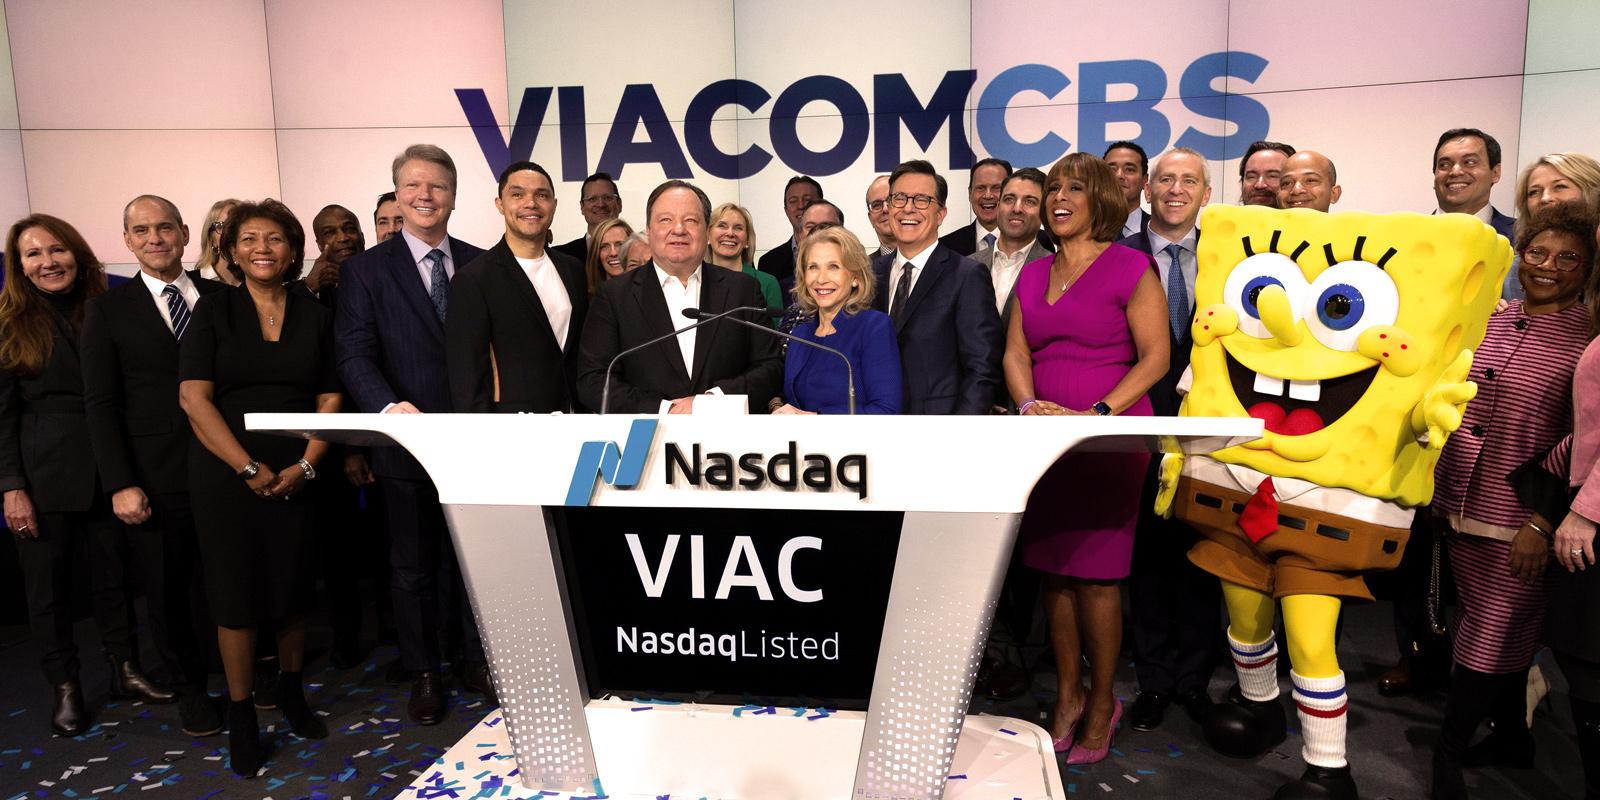 Bob Bakish: Welcome to ViacomCBS